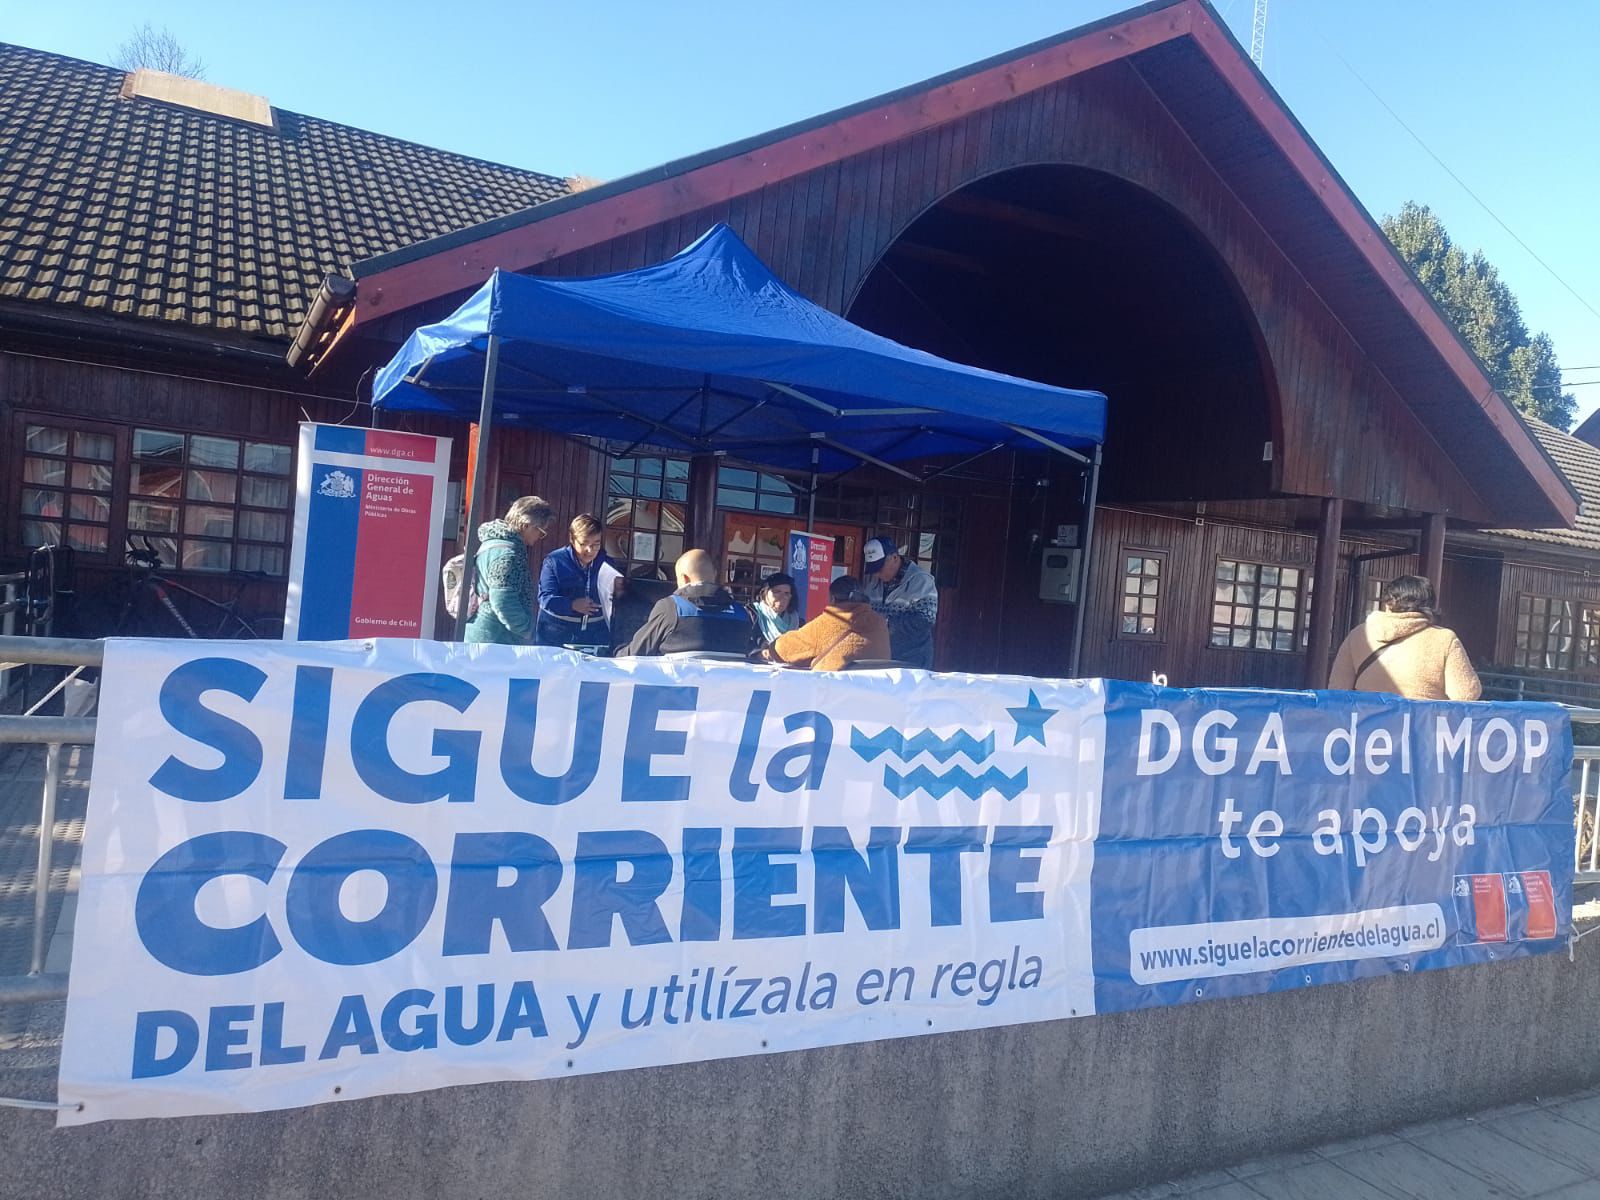 Desde Putre en la región de Arica y Parinacota hasta Cerro Castillo en Magallanes se realizarán jornadas de acompañamiento de la campaña “Sigue la corriente del agua y utilízala en regla”